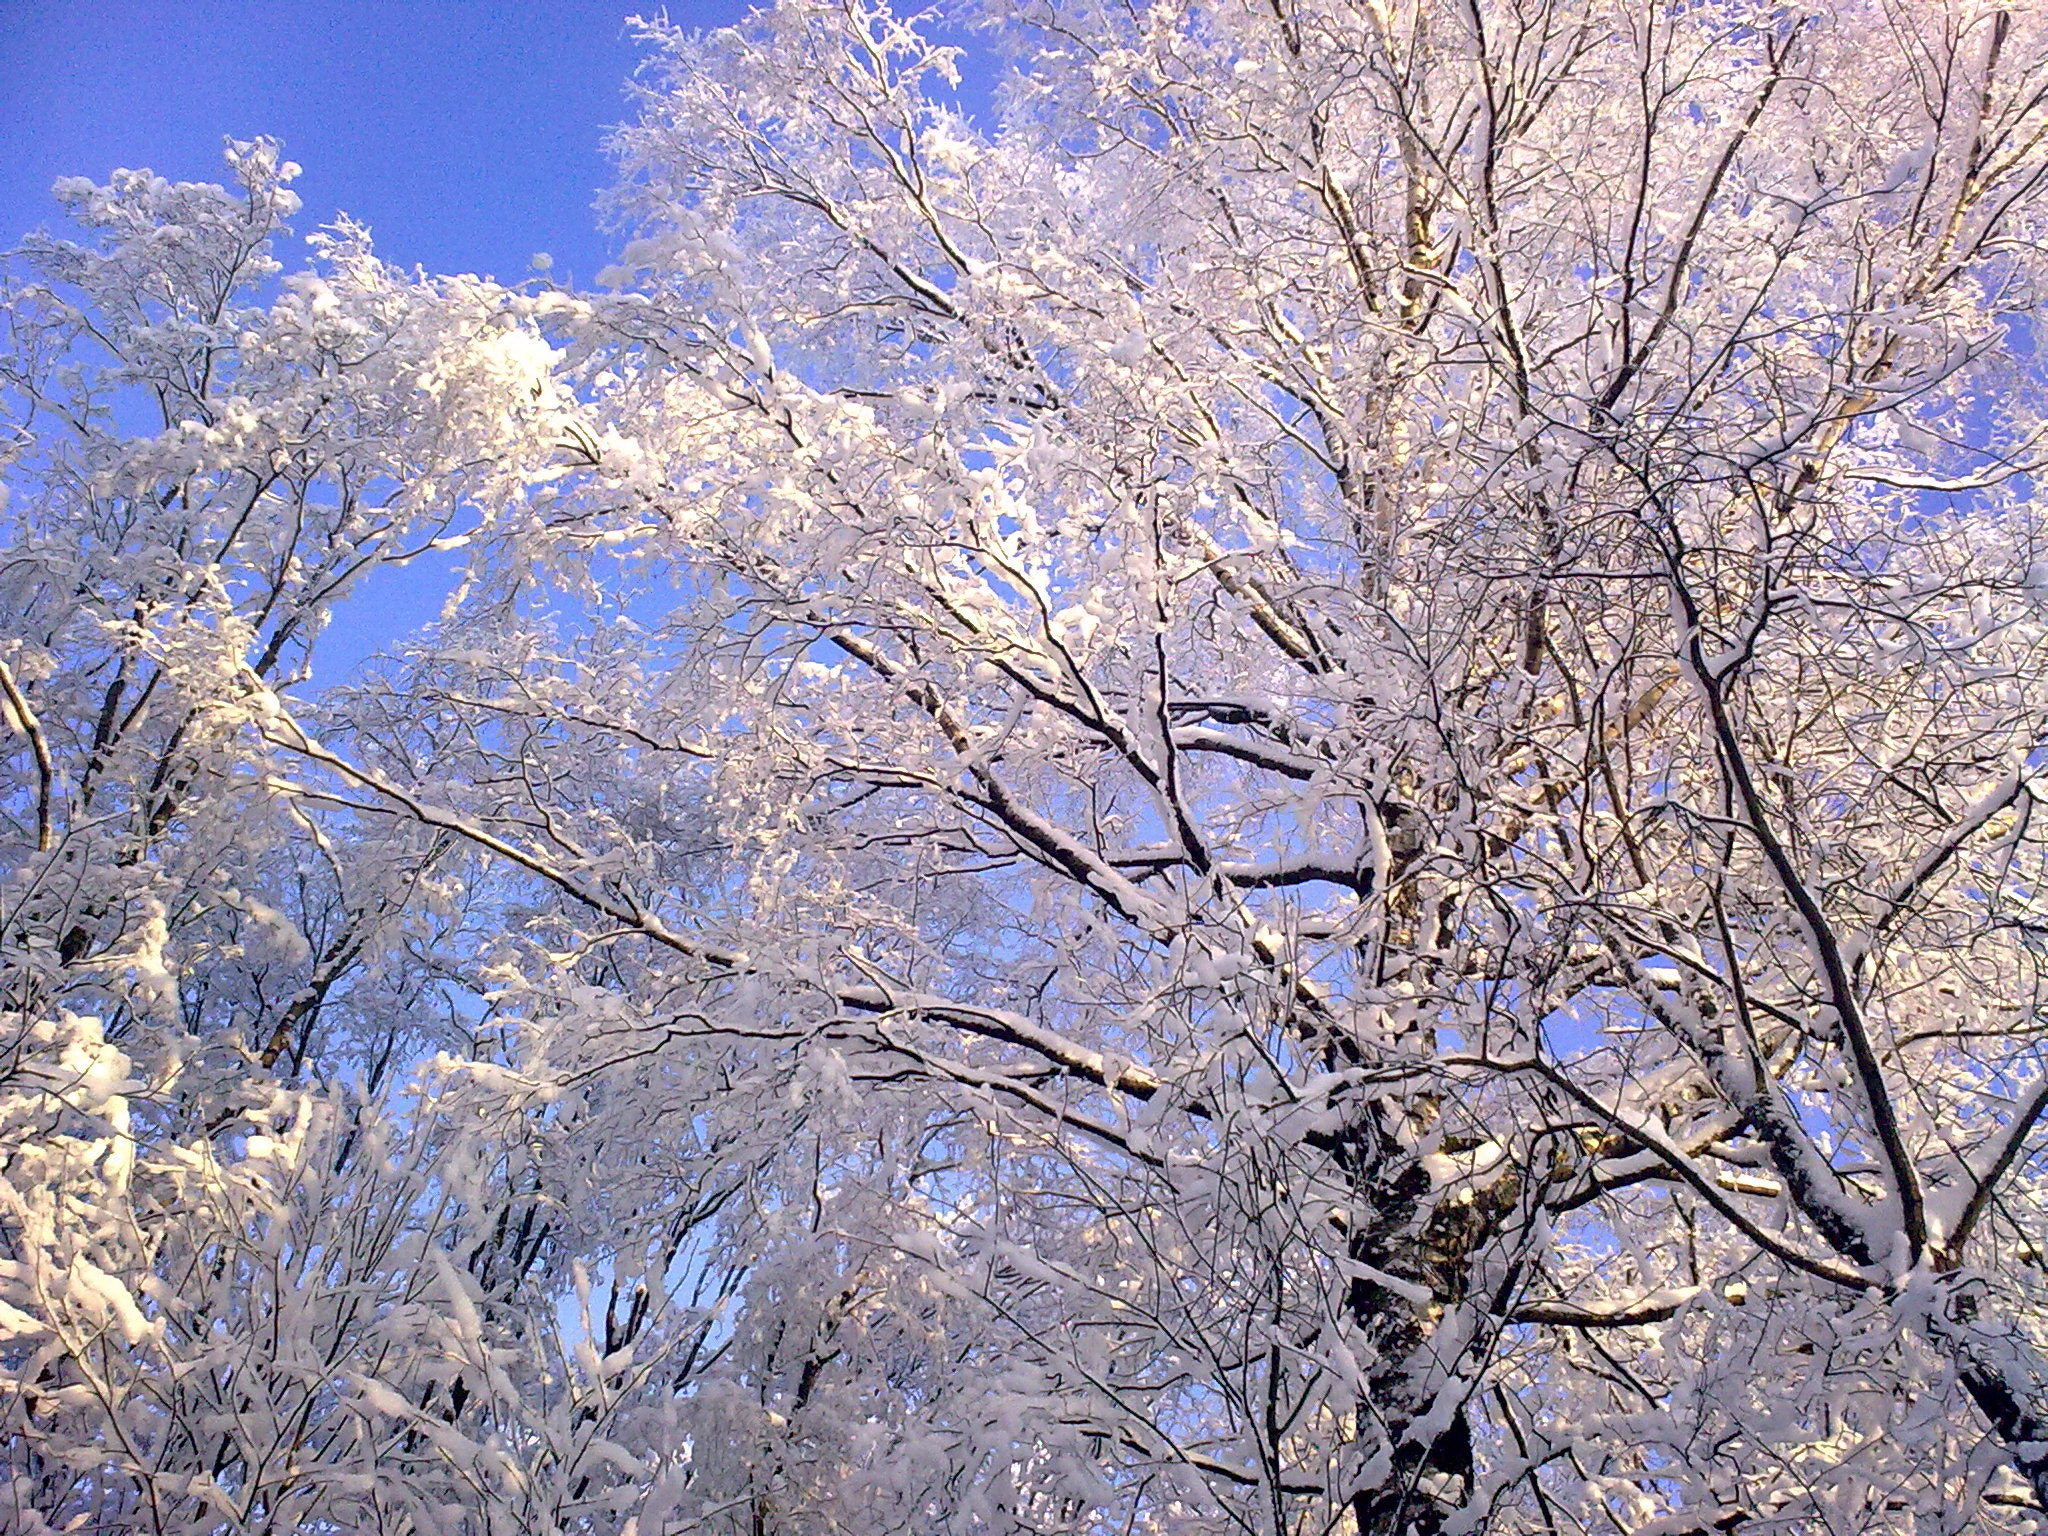 Nokia 5800 Xpres sample photo. Winter photography